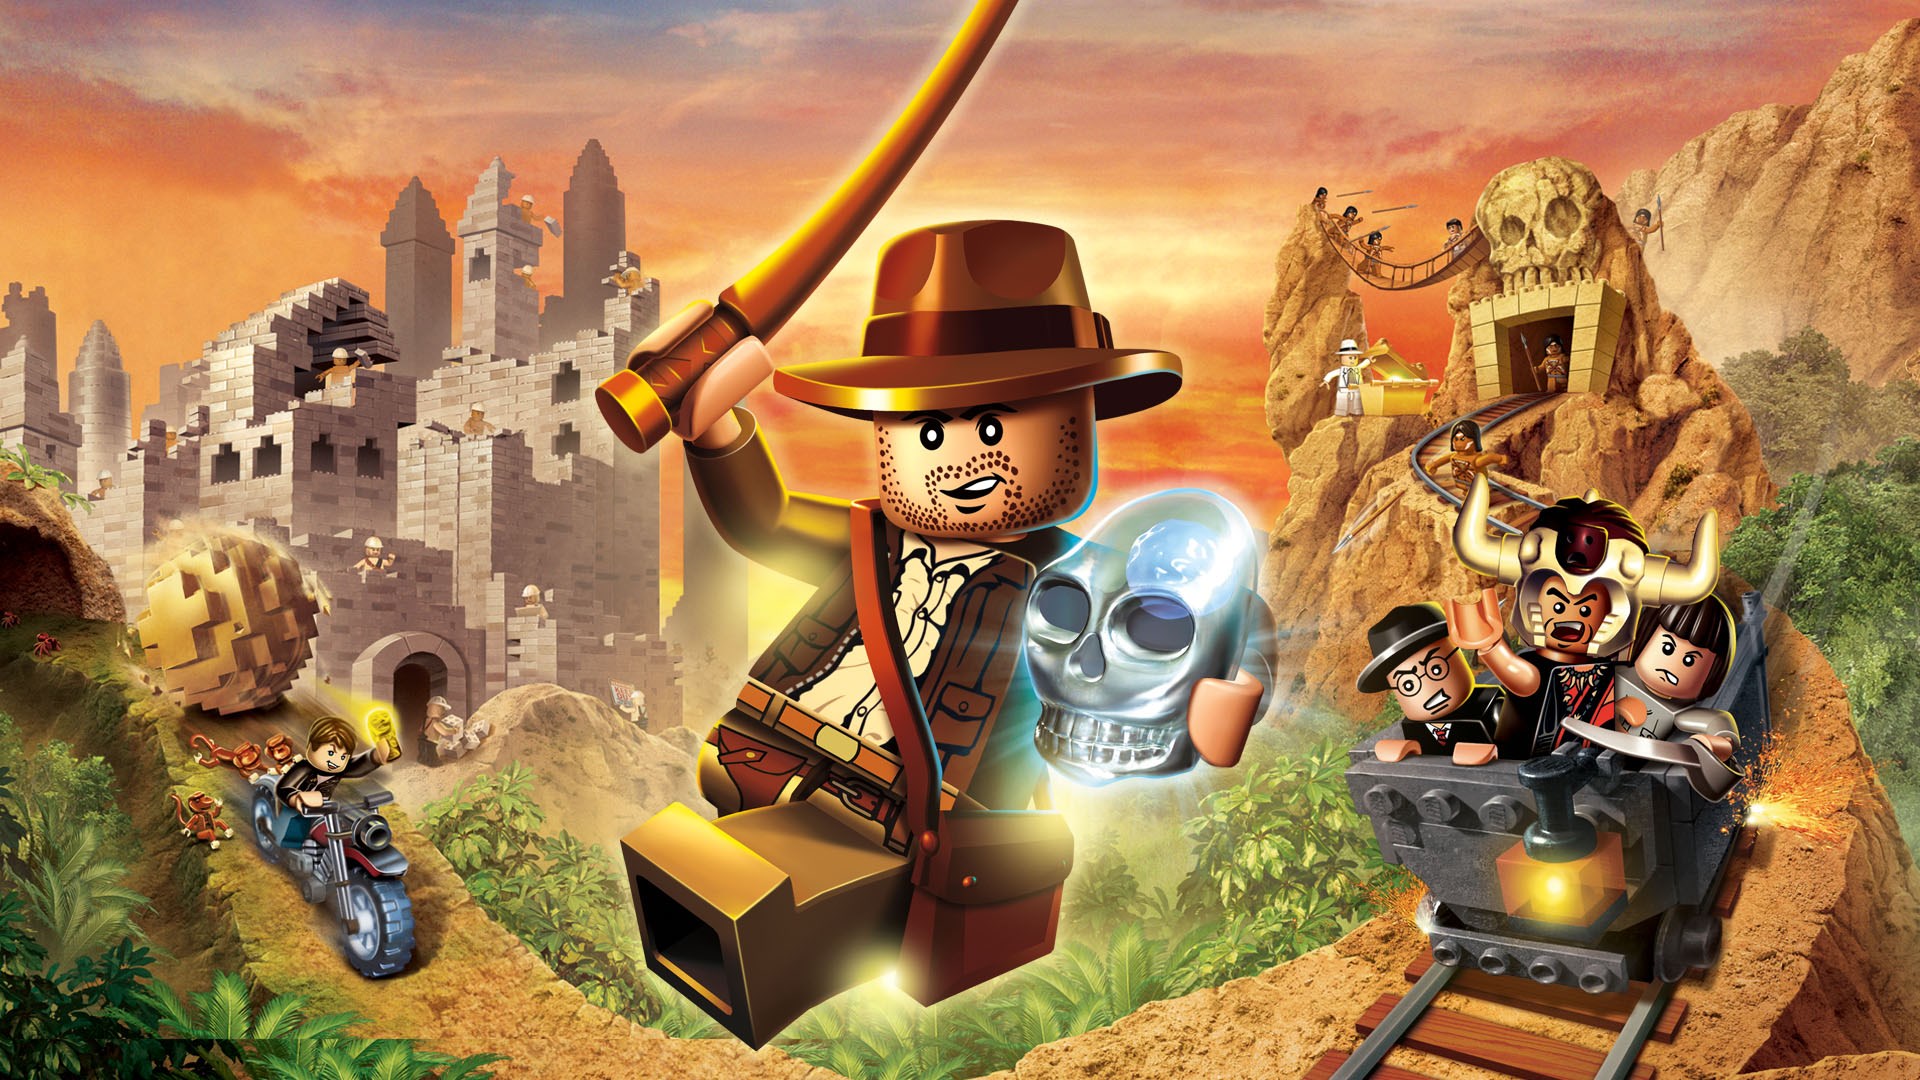 Buy LEGO Indiana Jones: The Original Adventures